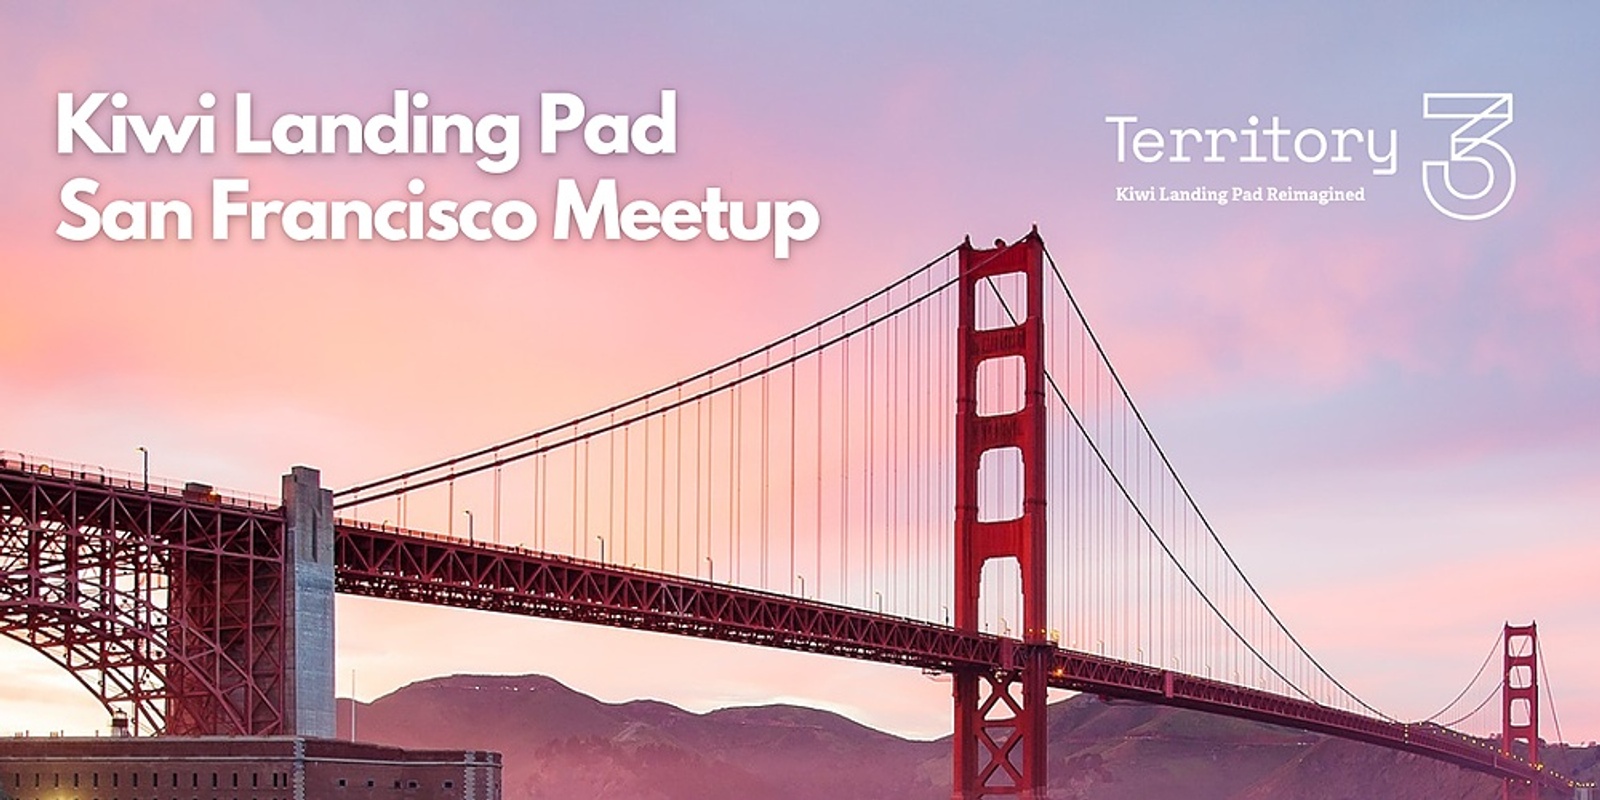 Kiwi Landing Pad Meetup in San Francisco